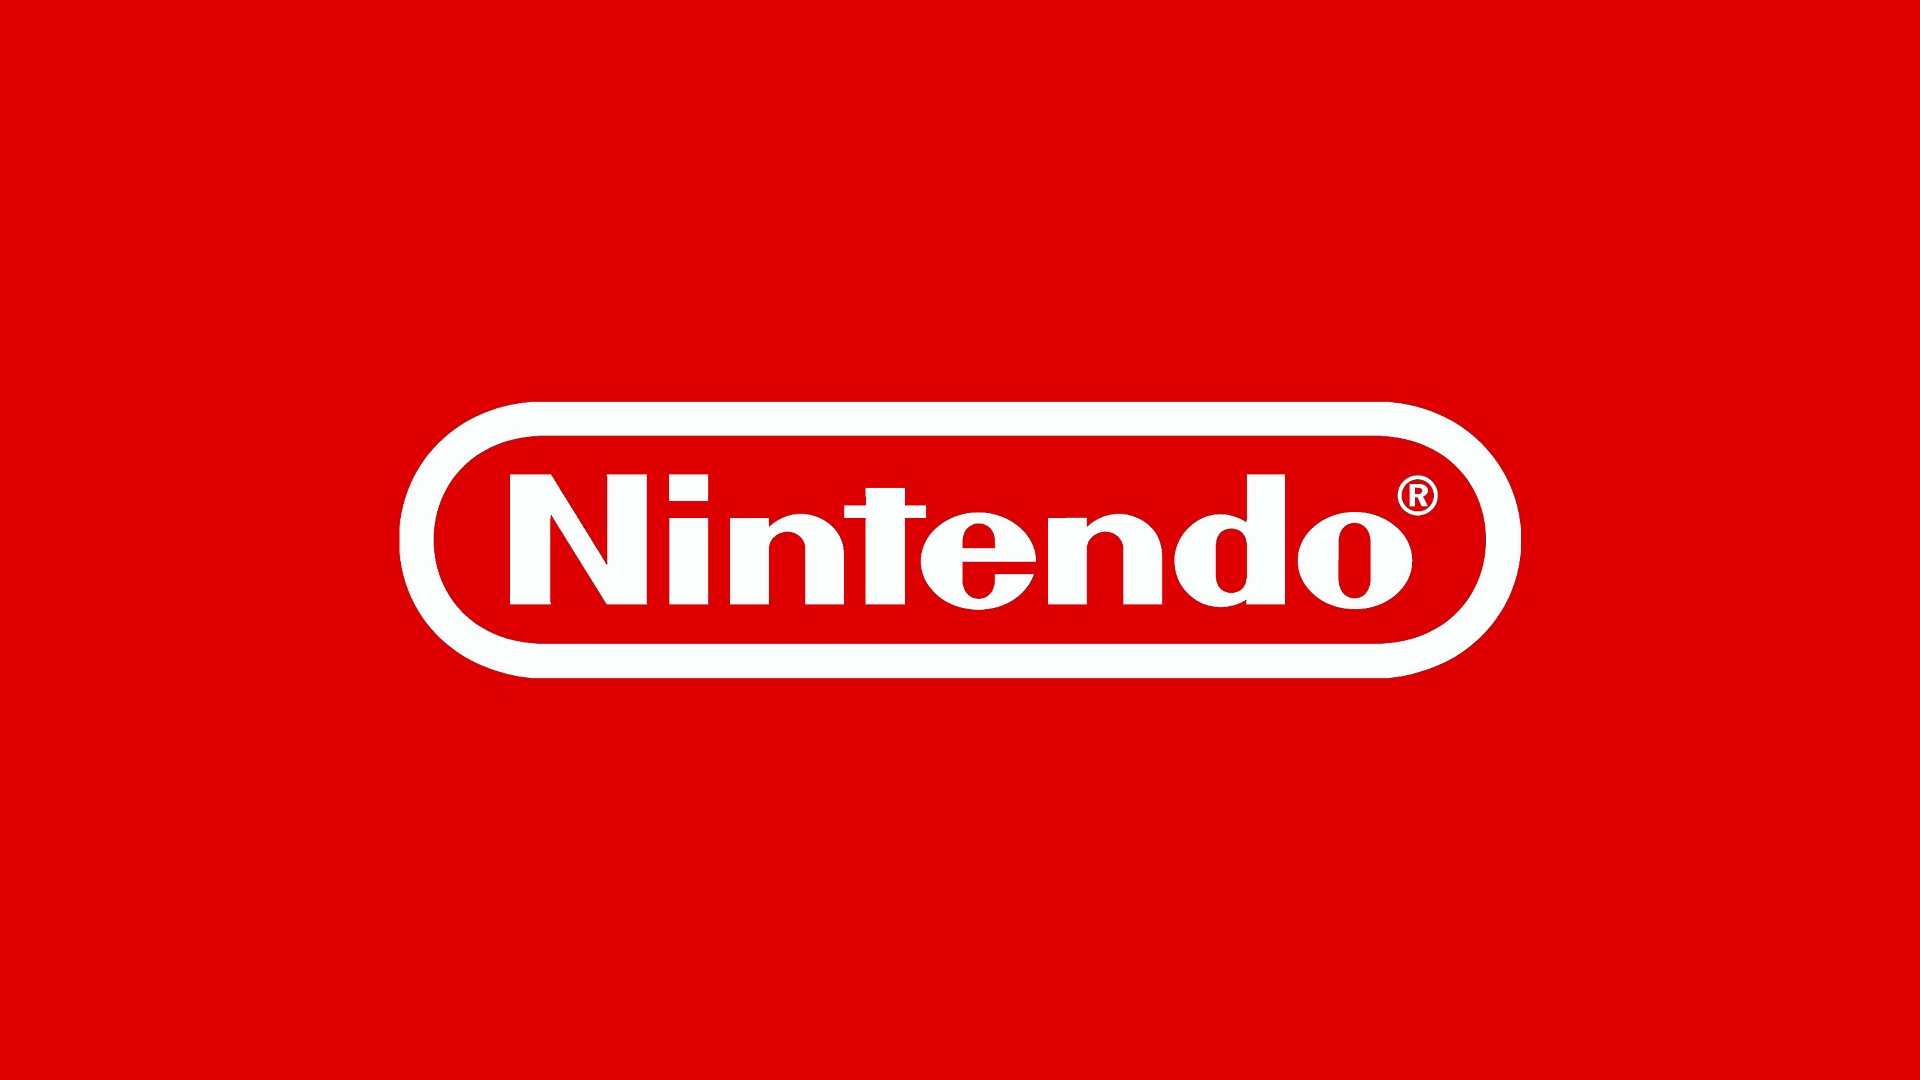 ประธาน Nintendo เชื่อว่าการเข้าซื้อกิจการขนาดใหญ่นั้นไม่ได้เป็นประโยชน์ต่อบริษัท